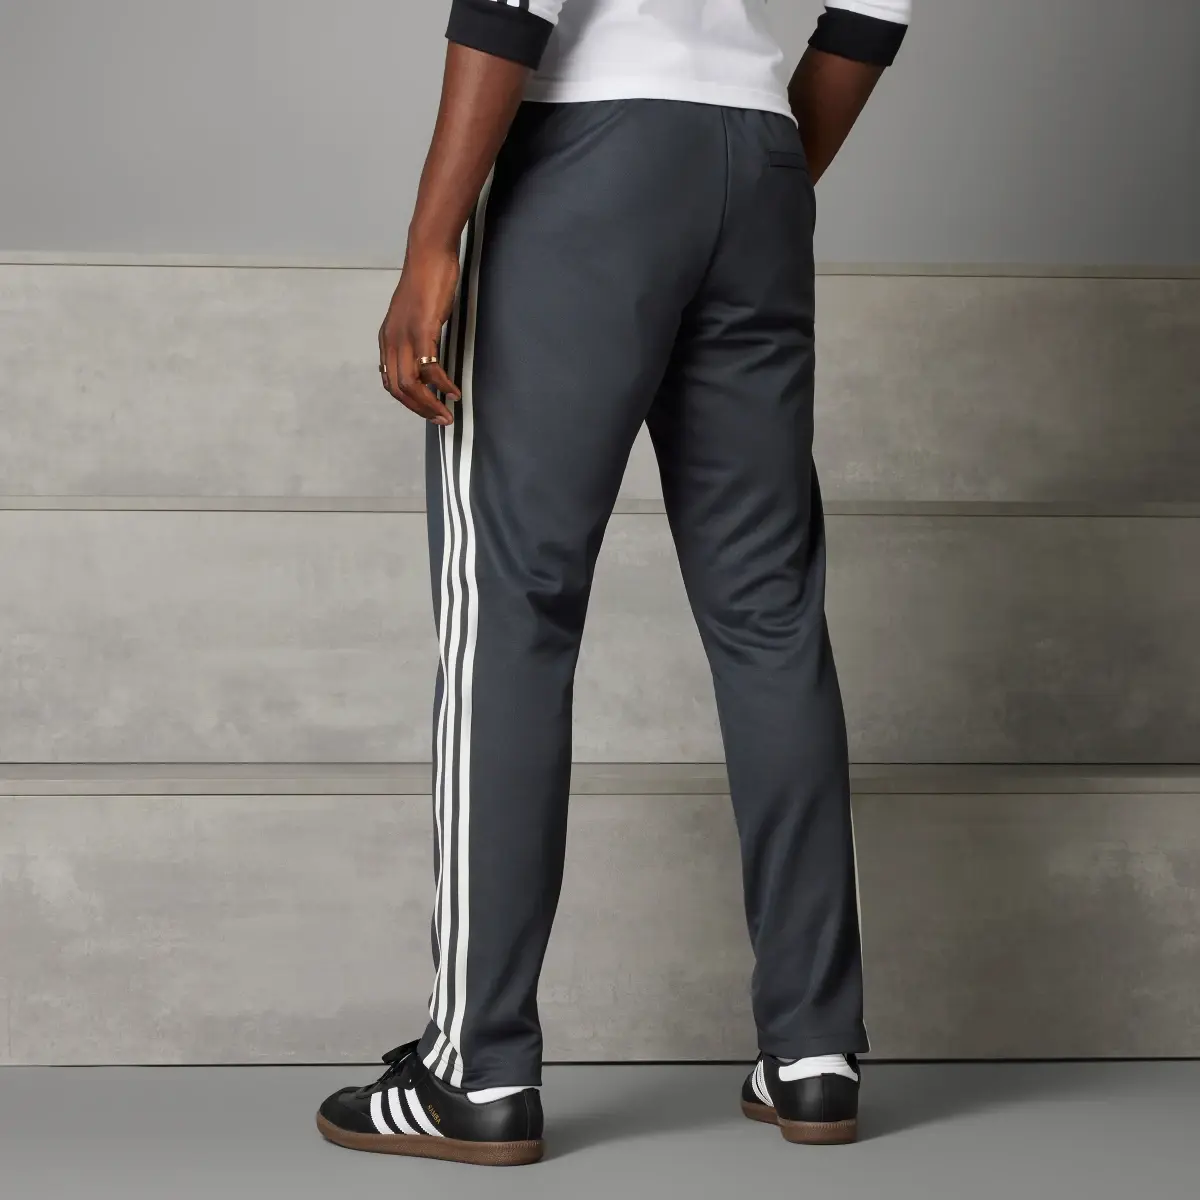 Adidas Spodnie dresowe Germany Beckenbauer. 2